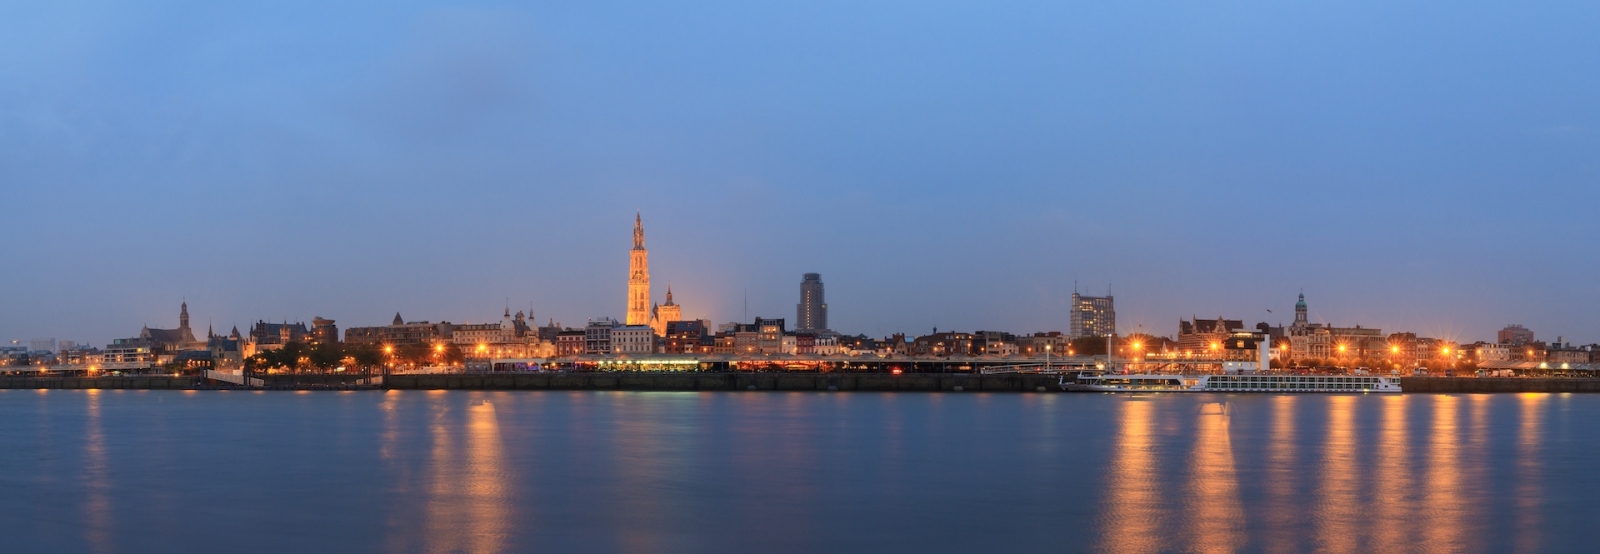 Bellissimo panorama urbano dello skyline di Anversa, in Belgio, durante l'ora blu vista dalla riva del fiume Schelda